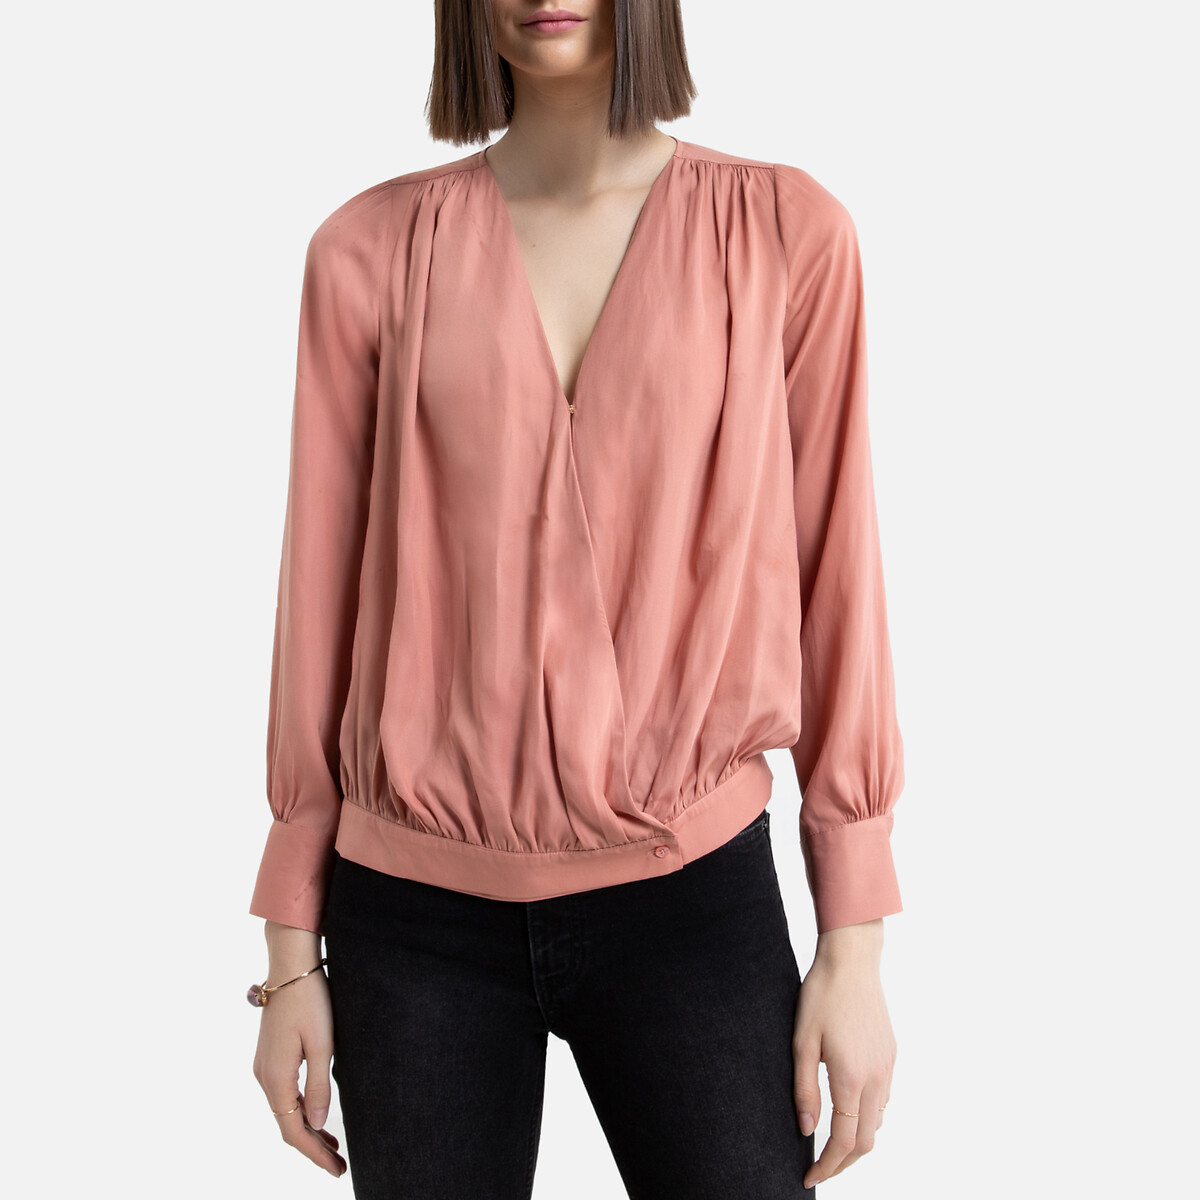 Купить Розовую Блузку Женскую В Интернет Магазине